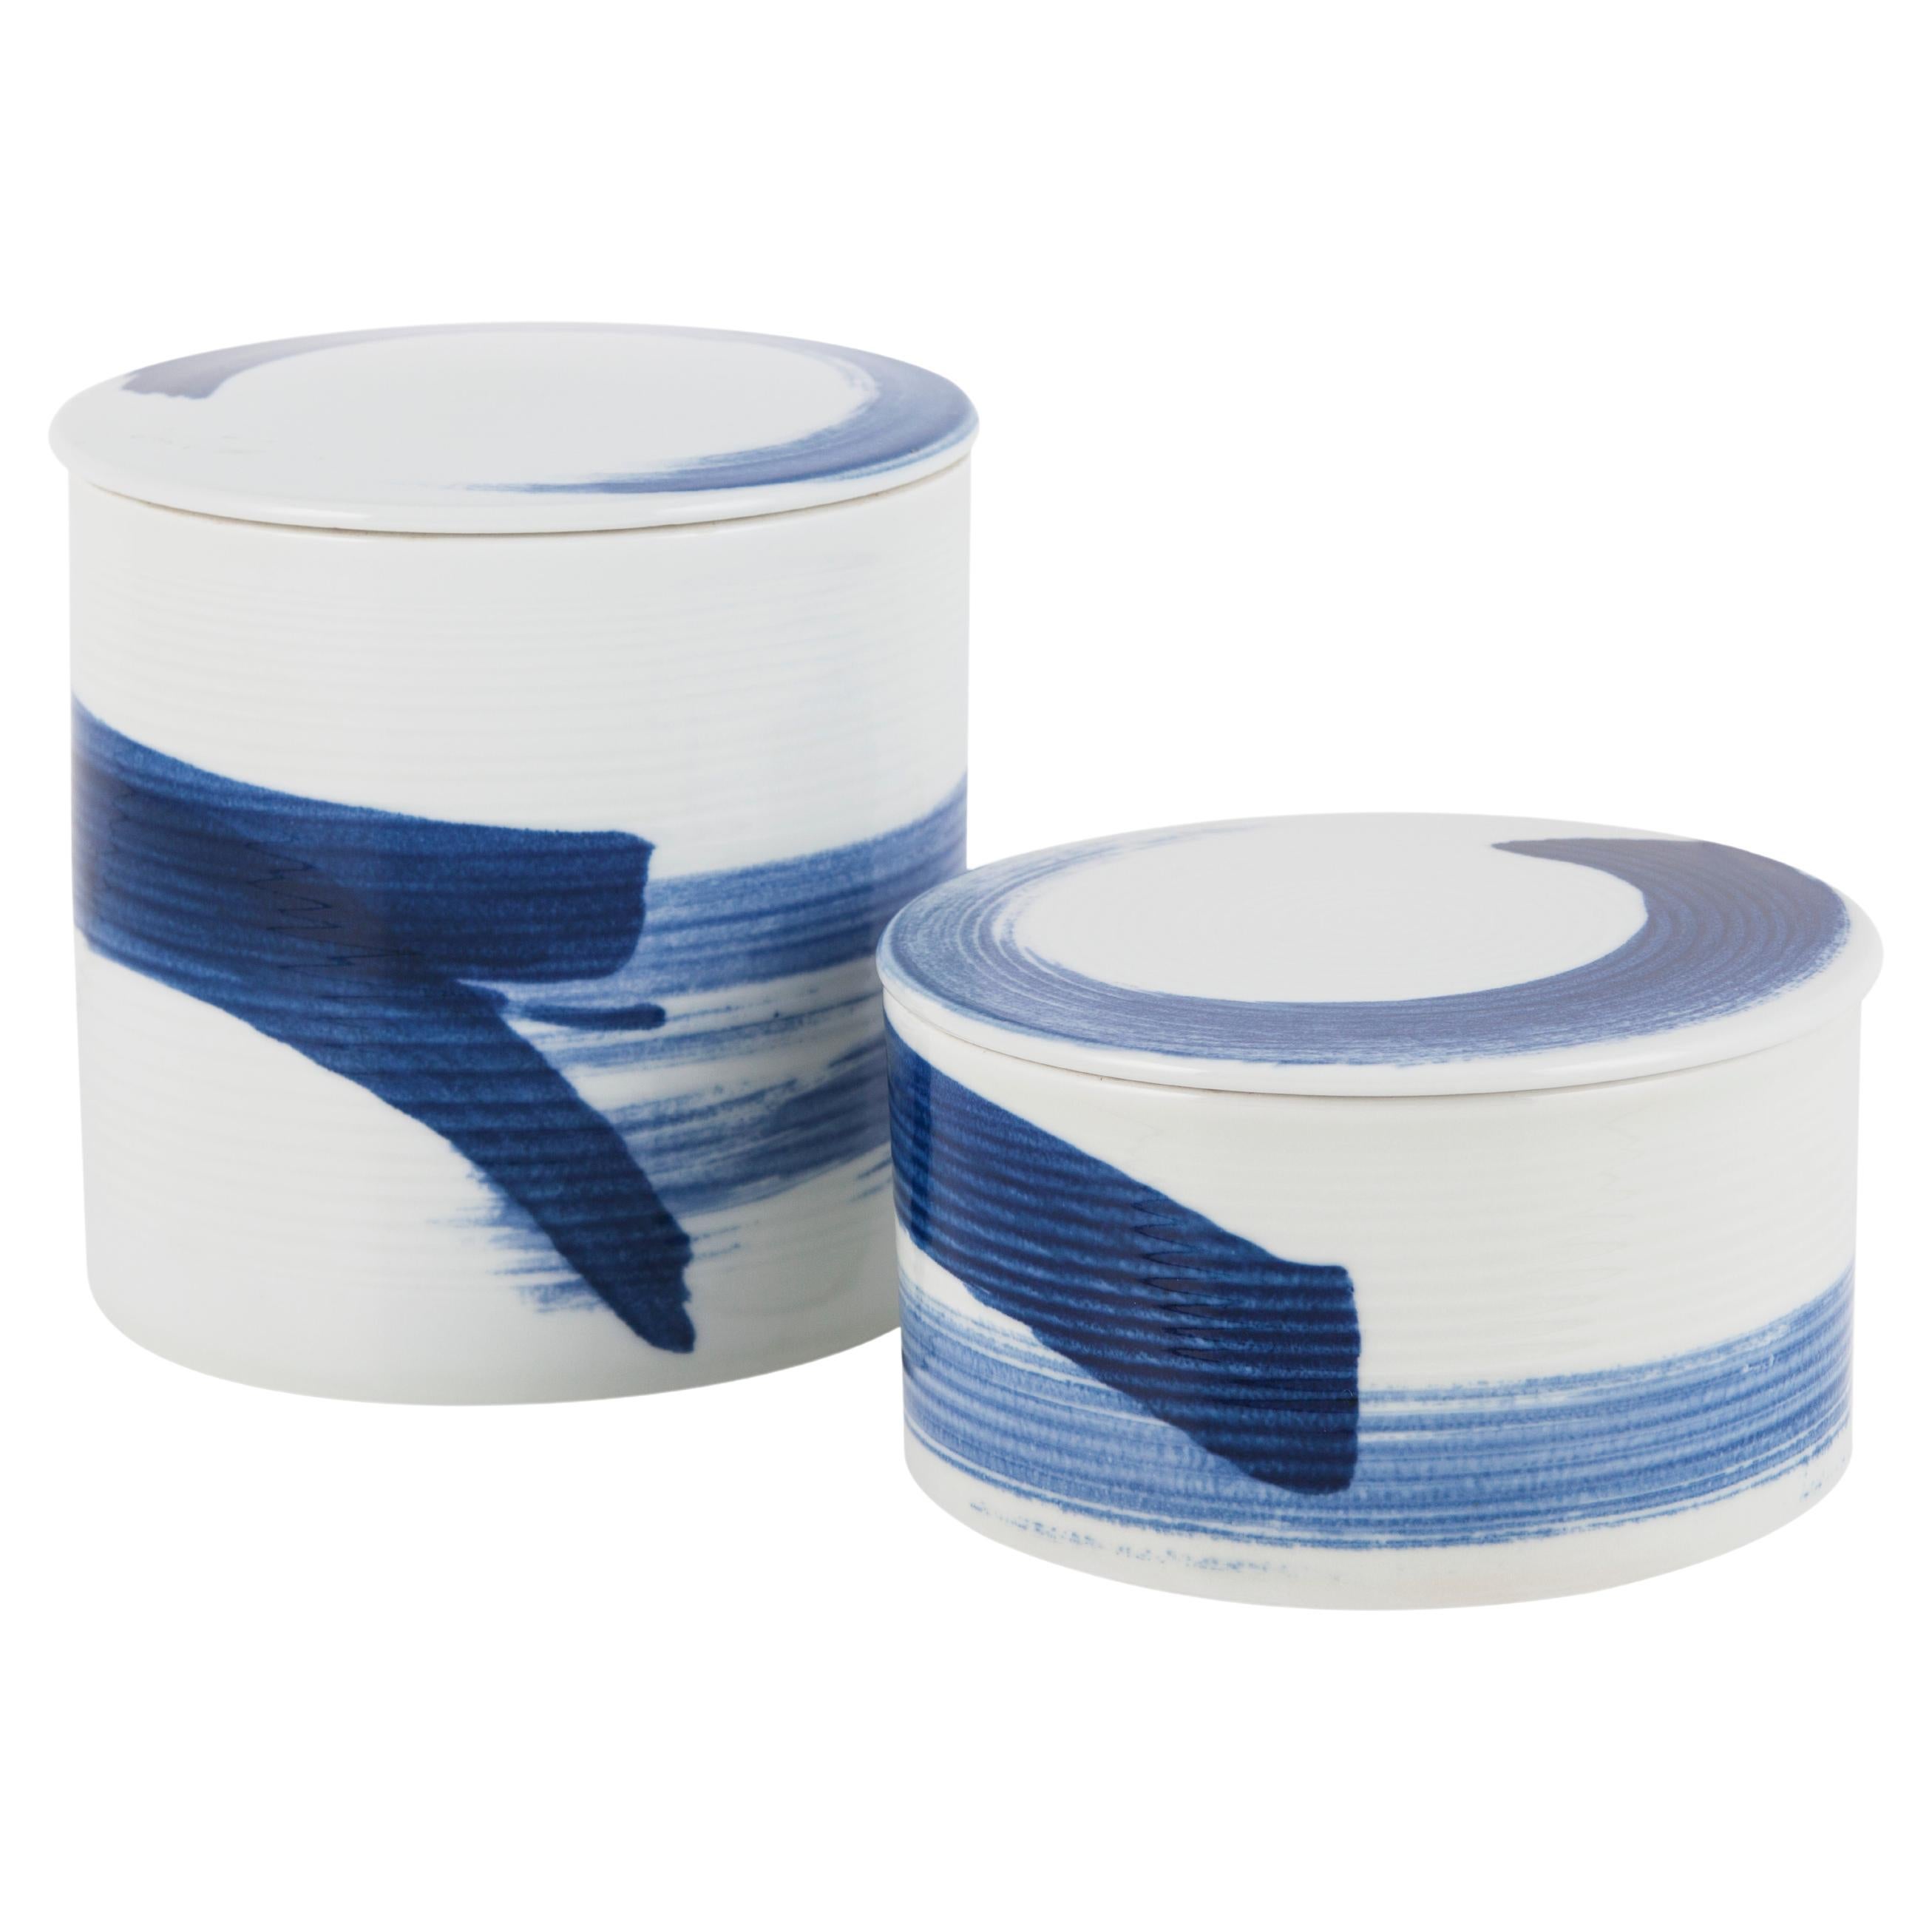 Set von 2 Wang-Porzellan-Töpfen, blau und weiß, handgeformt und handbemalt